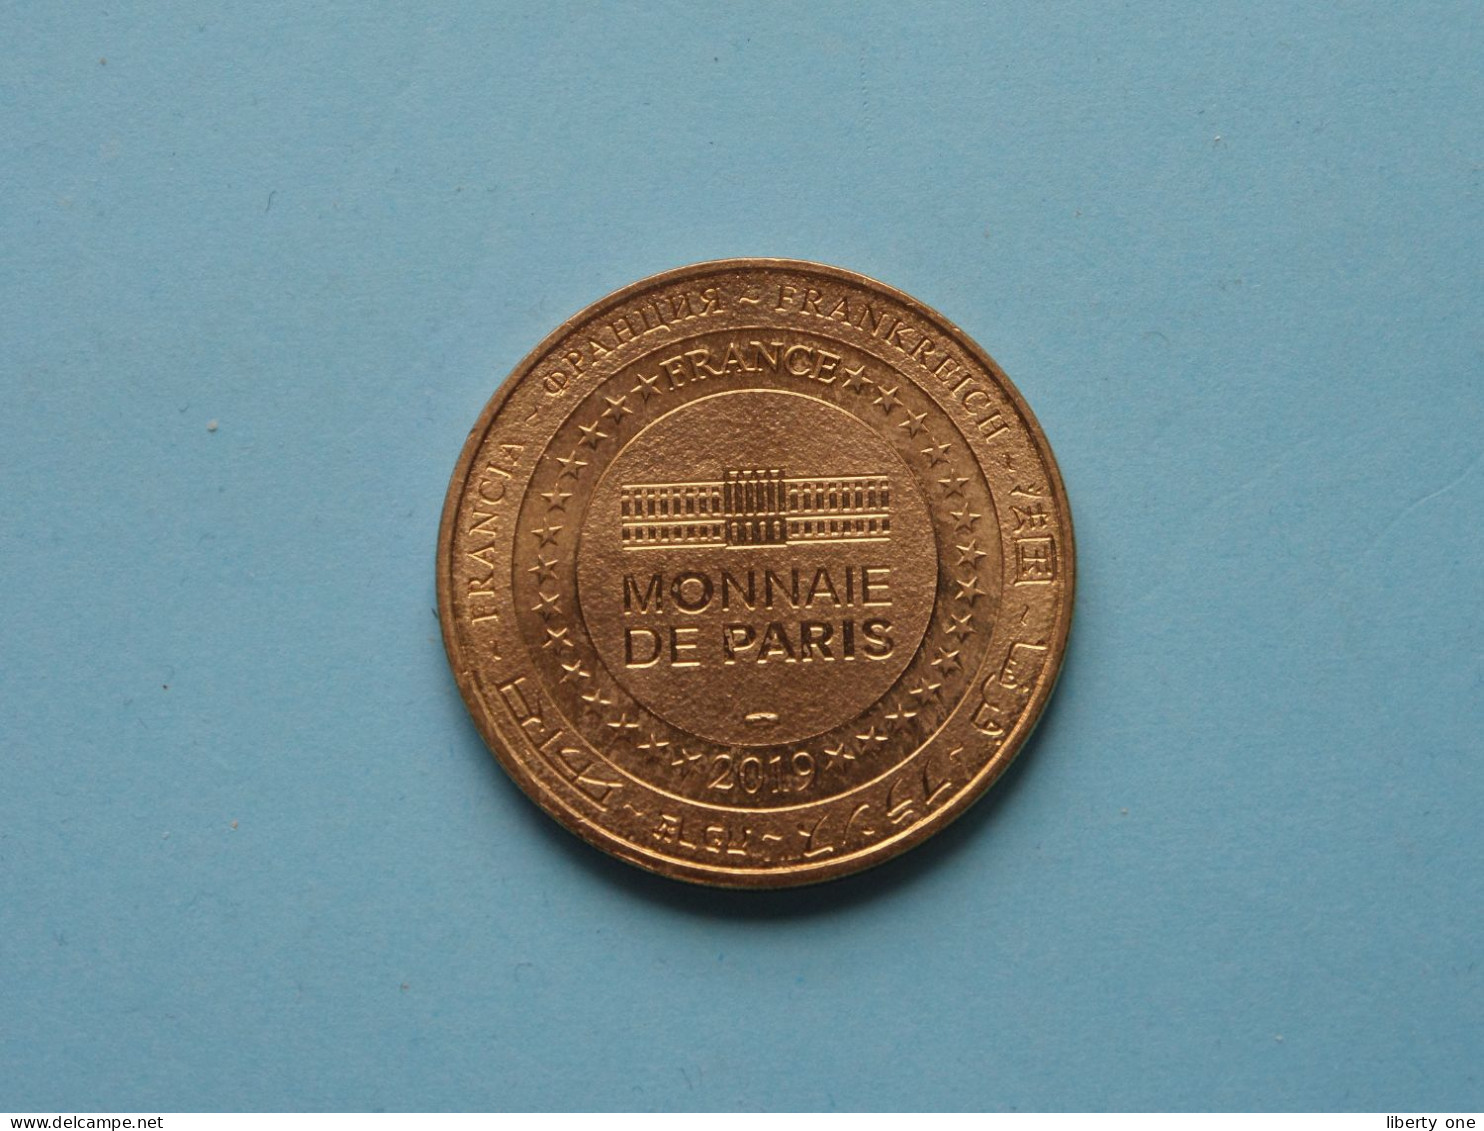 ORADOUR-SUR-GLANE Centre De La MEMOIRE 10 Juin 1944 ( 15,9 Gram / 3,5 Cm.) Monnaie De PARIS - 2019 ! - 2019